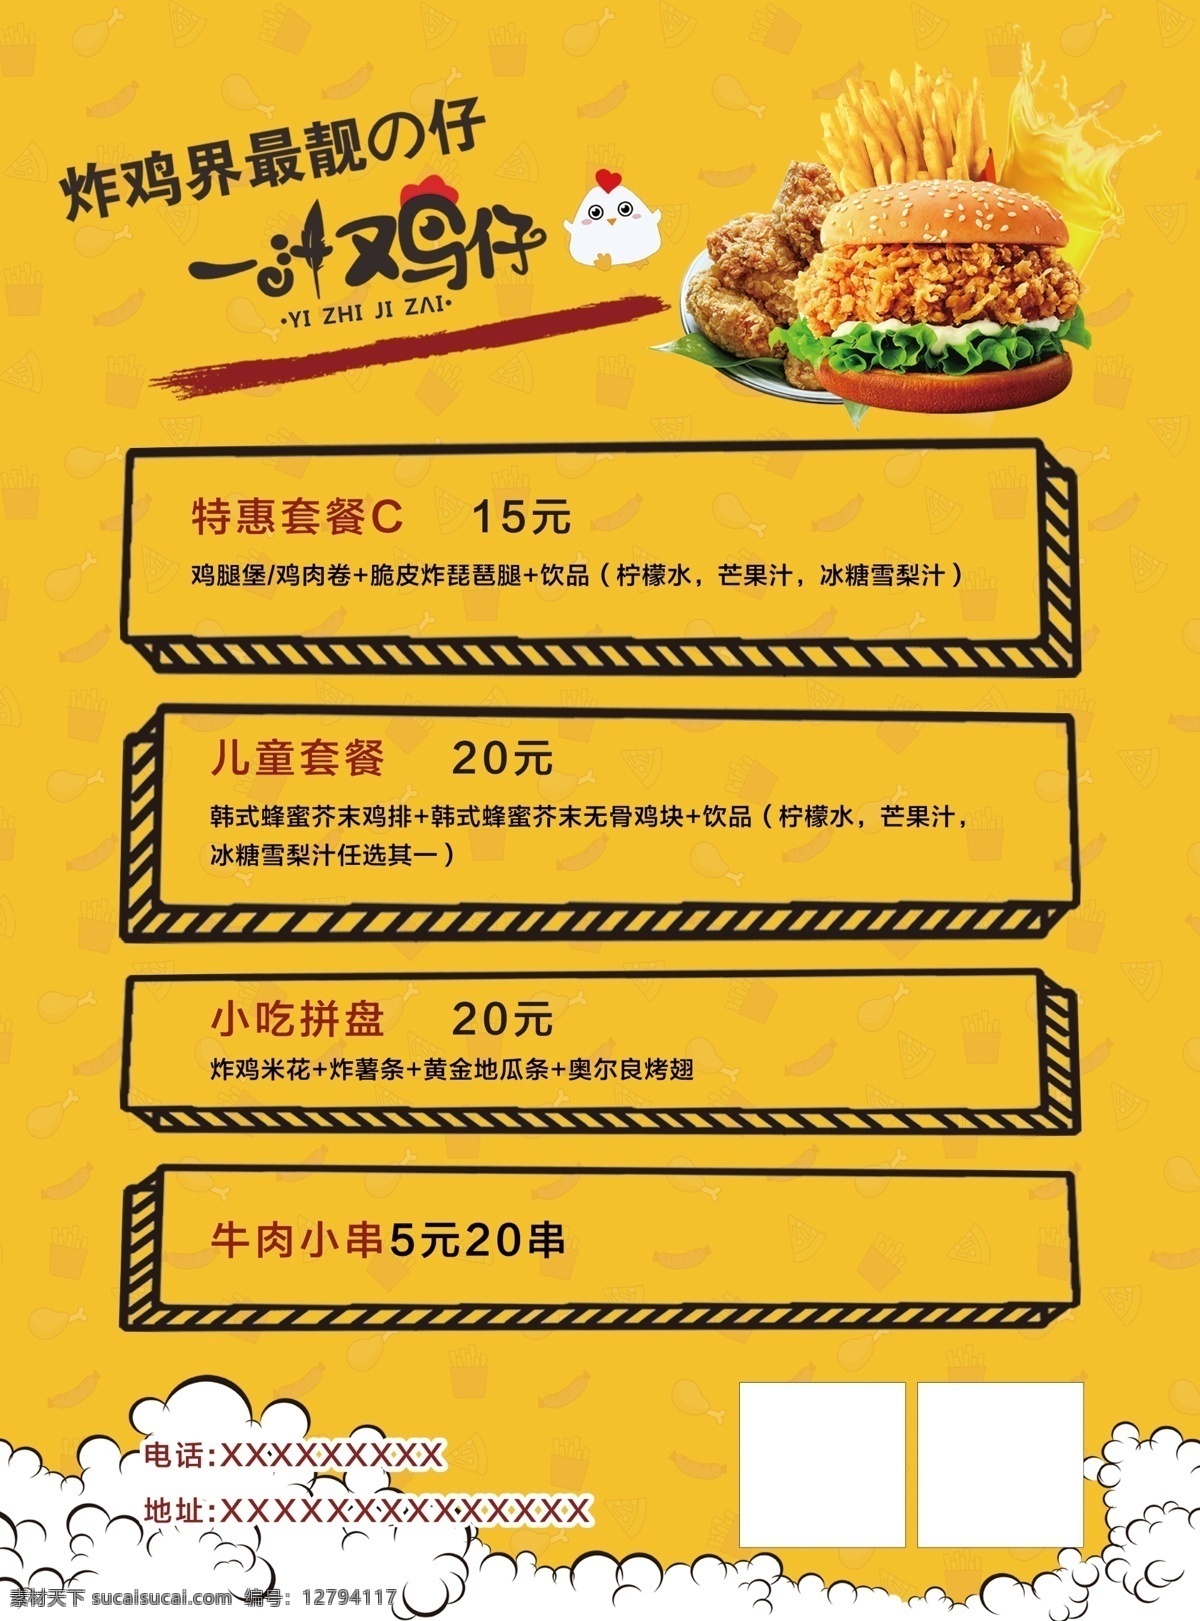 炸鸡店彩页 宣传单 炸鸡店 快餐店彩页 汉堡薯条 黄色宣传单 彩页